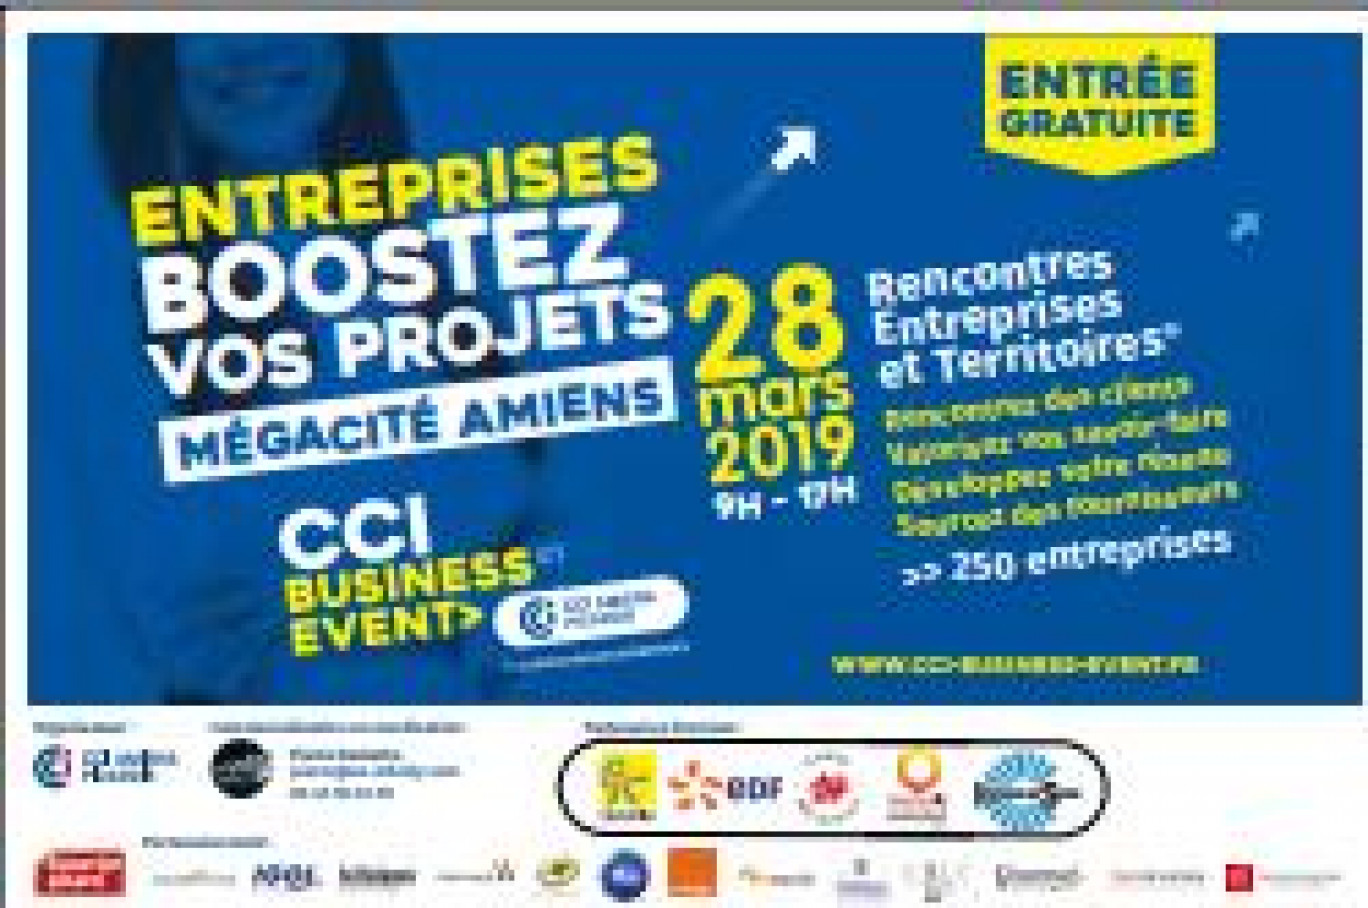 La première édition de CCI Business Event se tiendra à Mégacité le 28 mars.